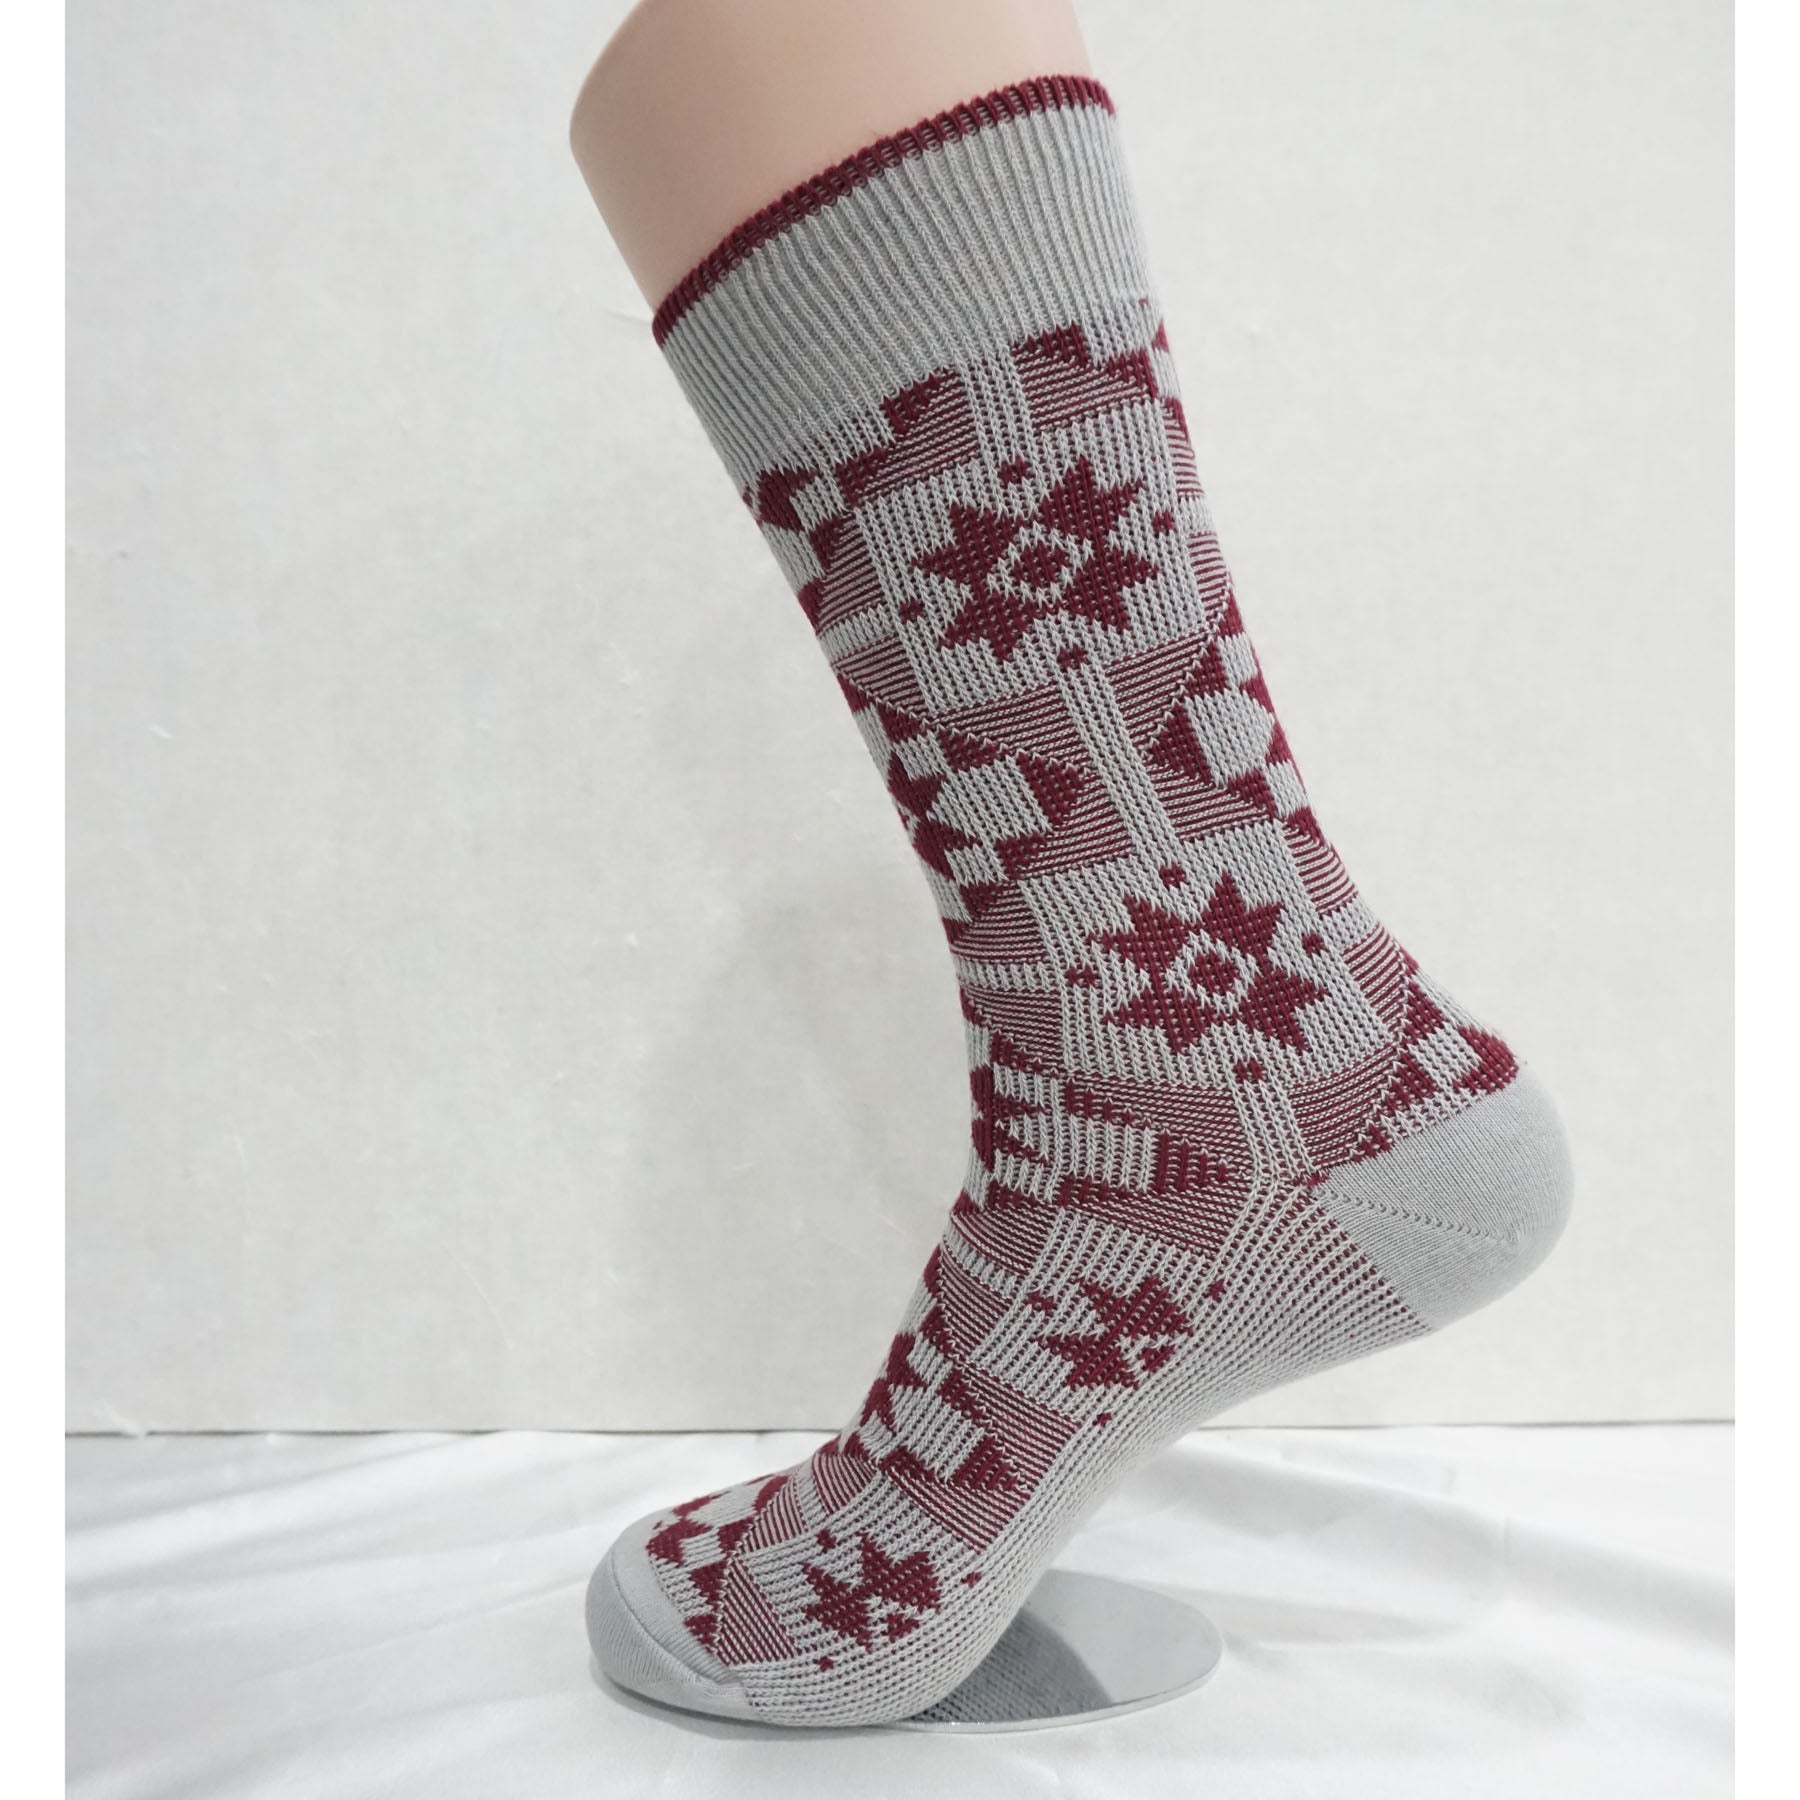 4Pack Men's Winter Casual Warm Knit Dress Socks